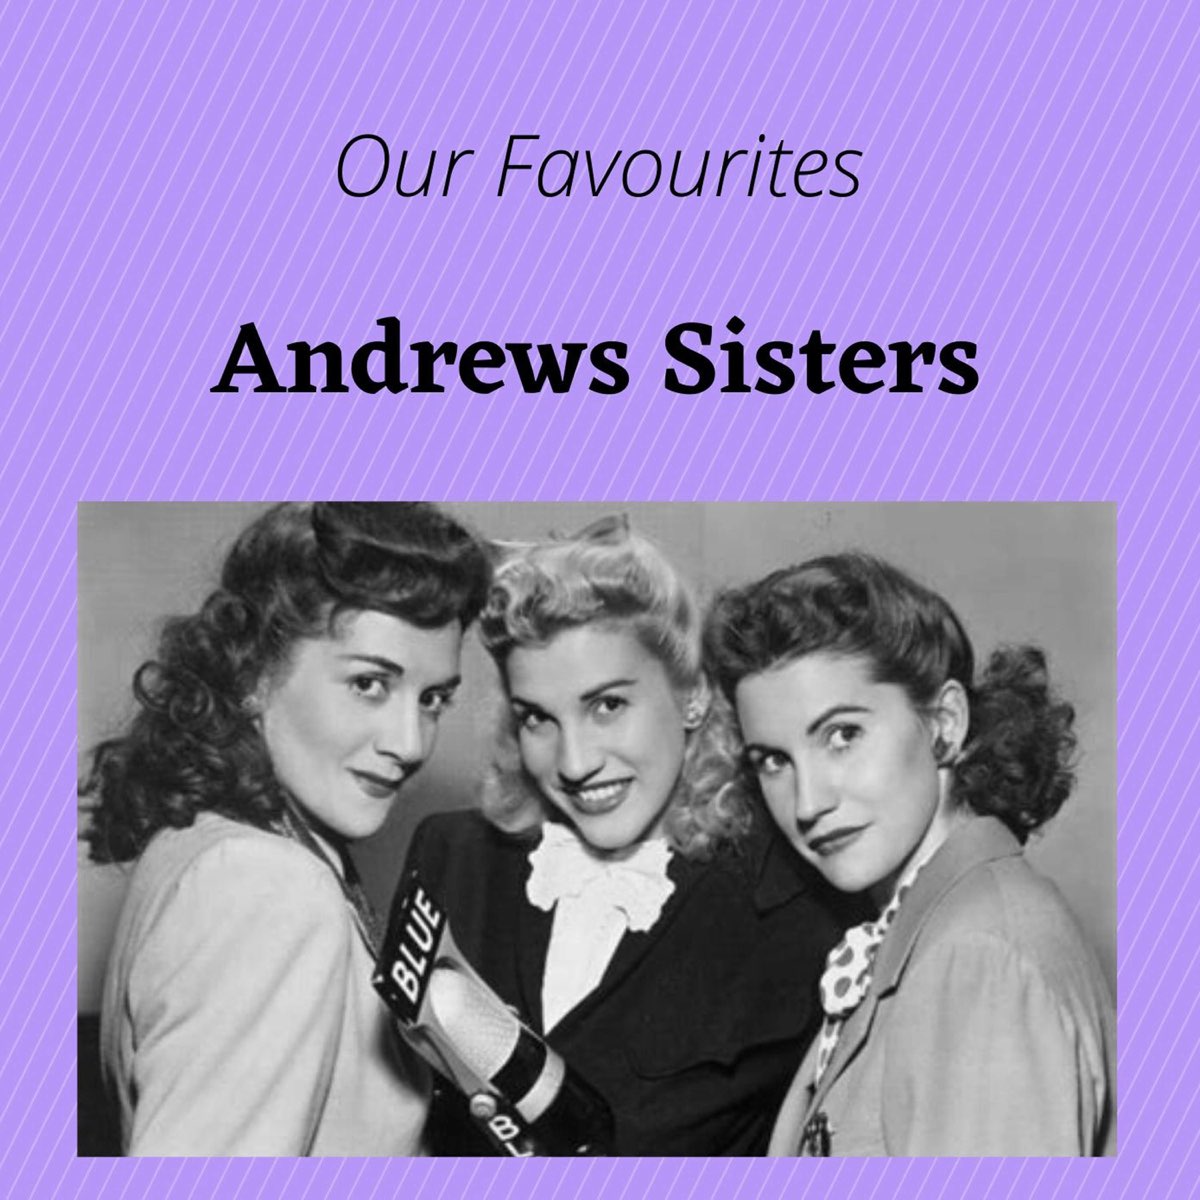 Andrew's sisters. Сёстры Эндрюс. The Andrews sisters фото. The Andrews sisters в старости. Сестры Эндрюс горячие фото.